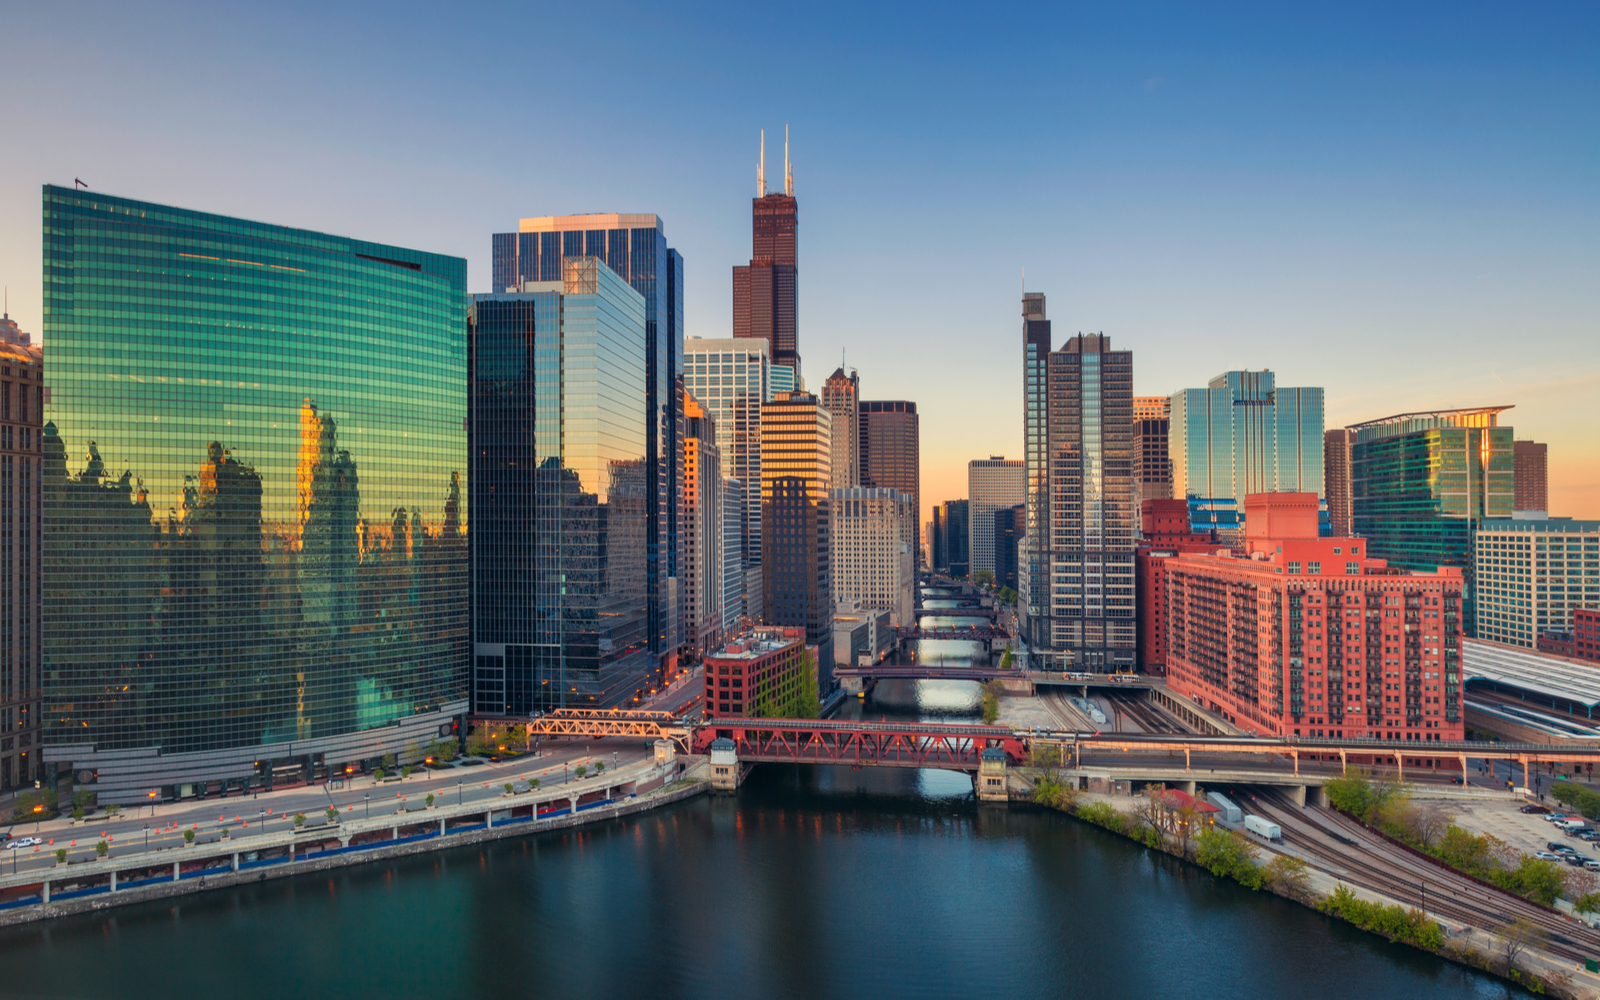 Is Chicago Safe? | Travel Tips & Safety Concerns